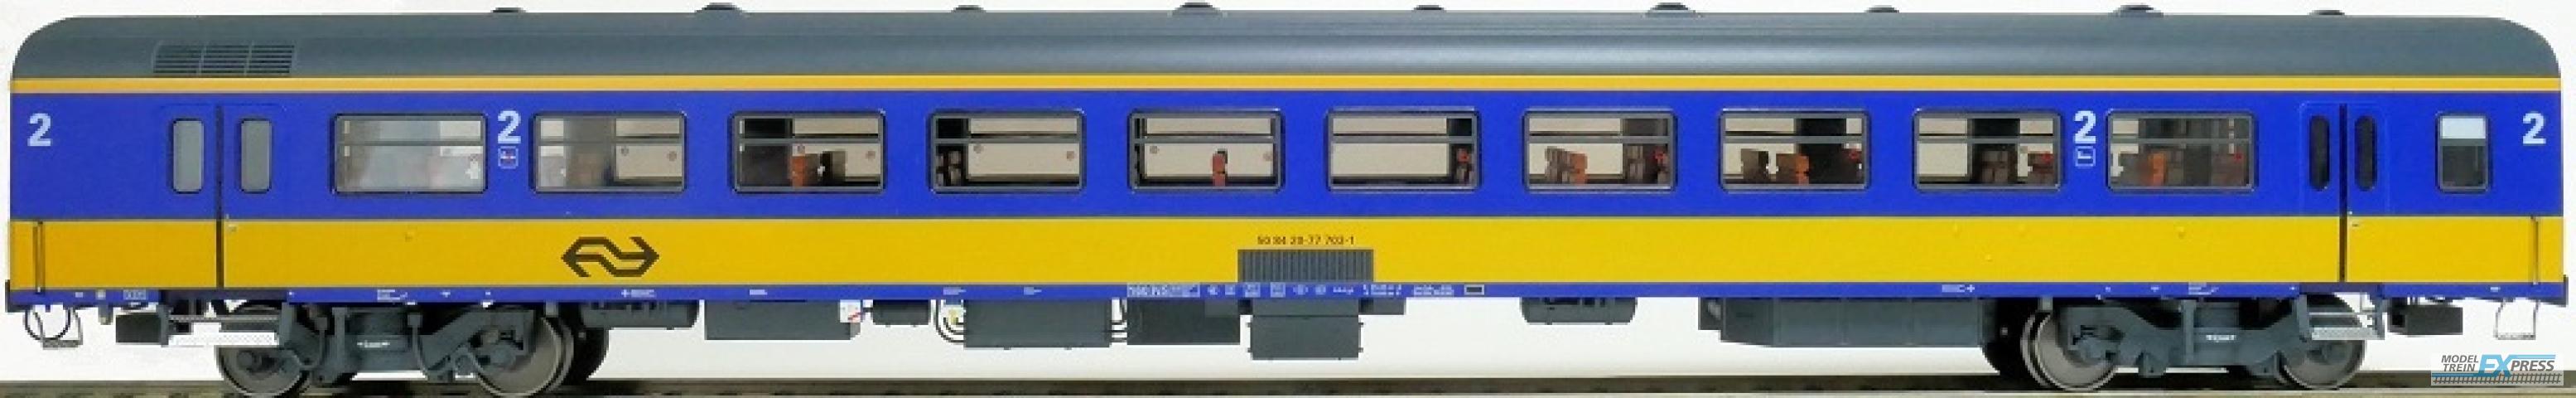 Exact-train 11041 NS ICR (Originalversion) für den Inlandseinsatz Reisezugwagen B (Farbe Gelb / Blau), Ep. IV